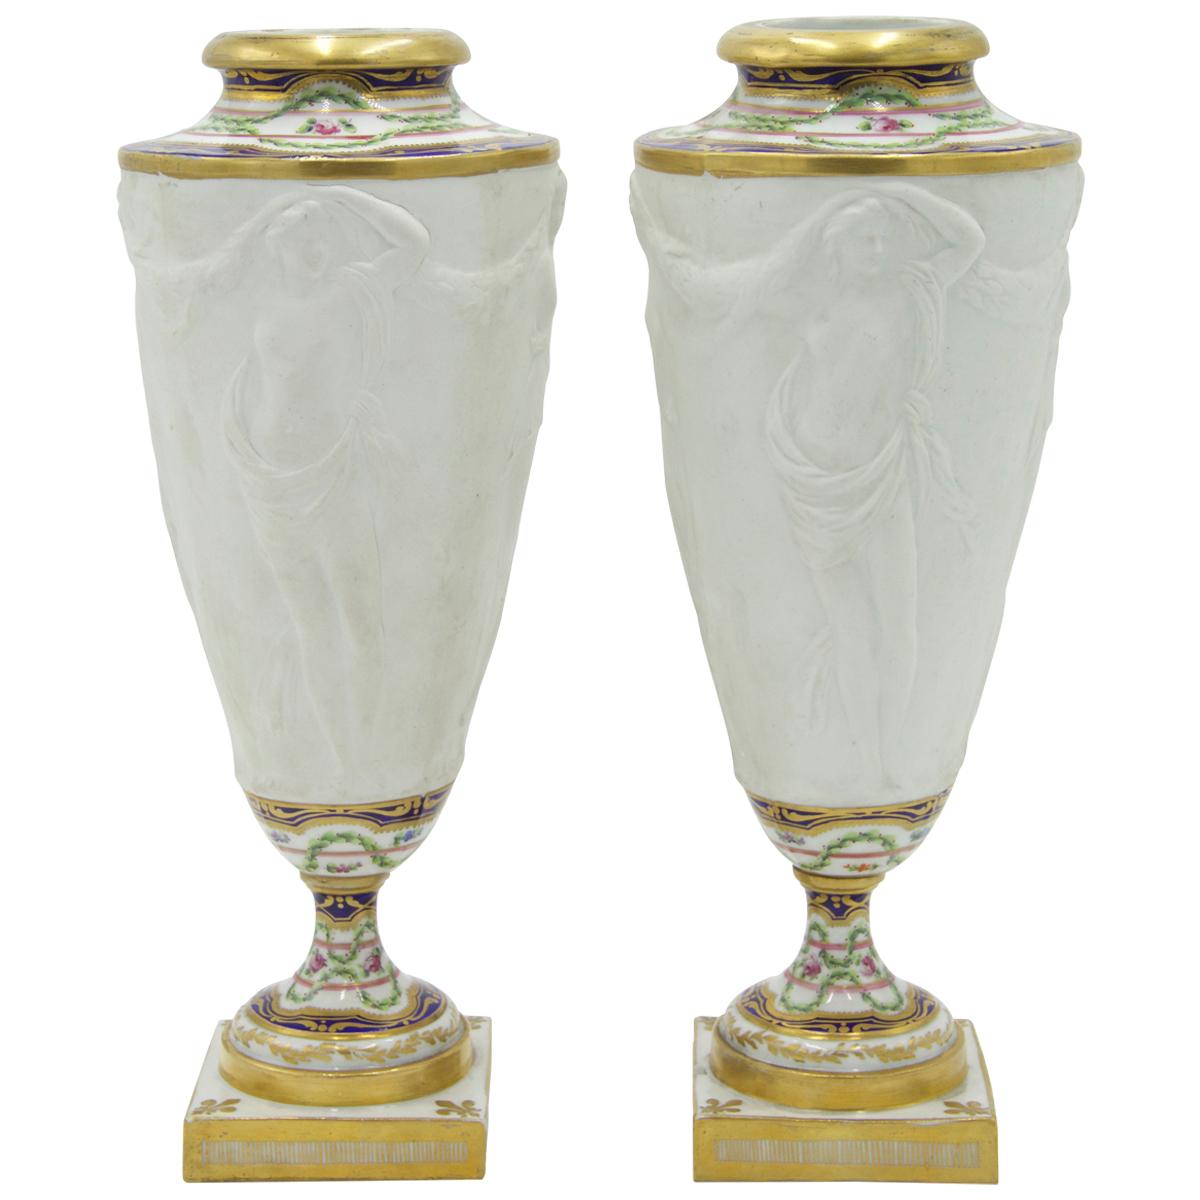 Paire d'urnes en porcelaine de Sèvres de l'époque victorienne française